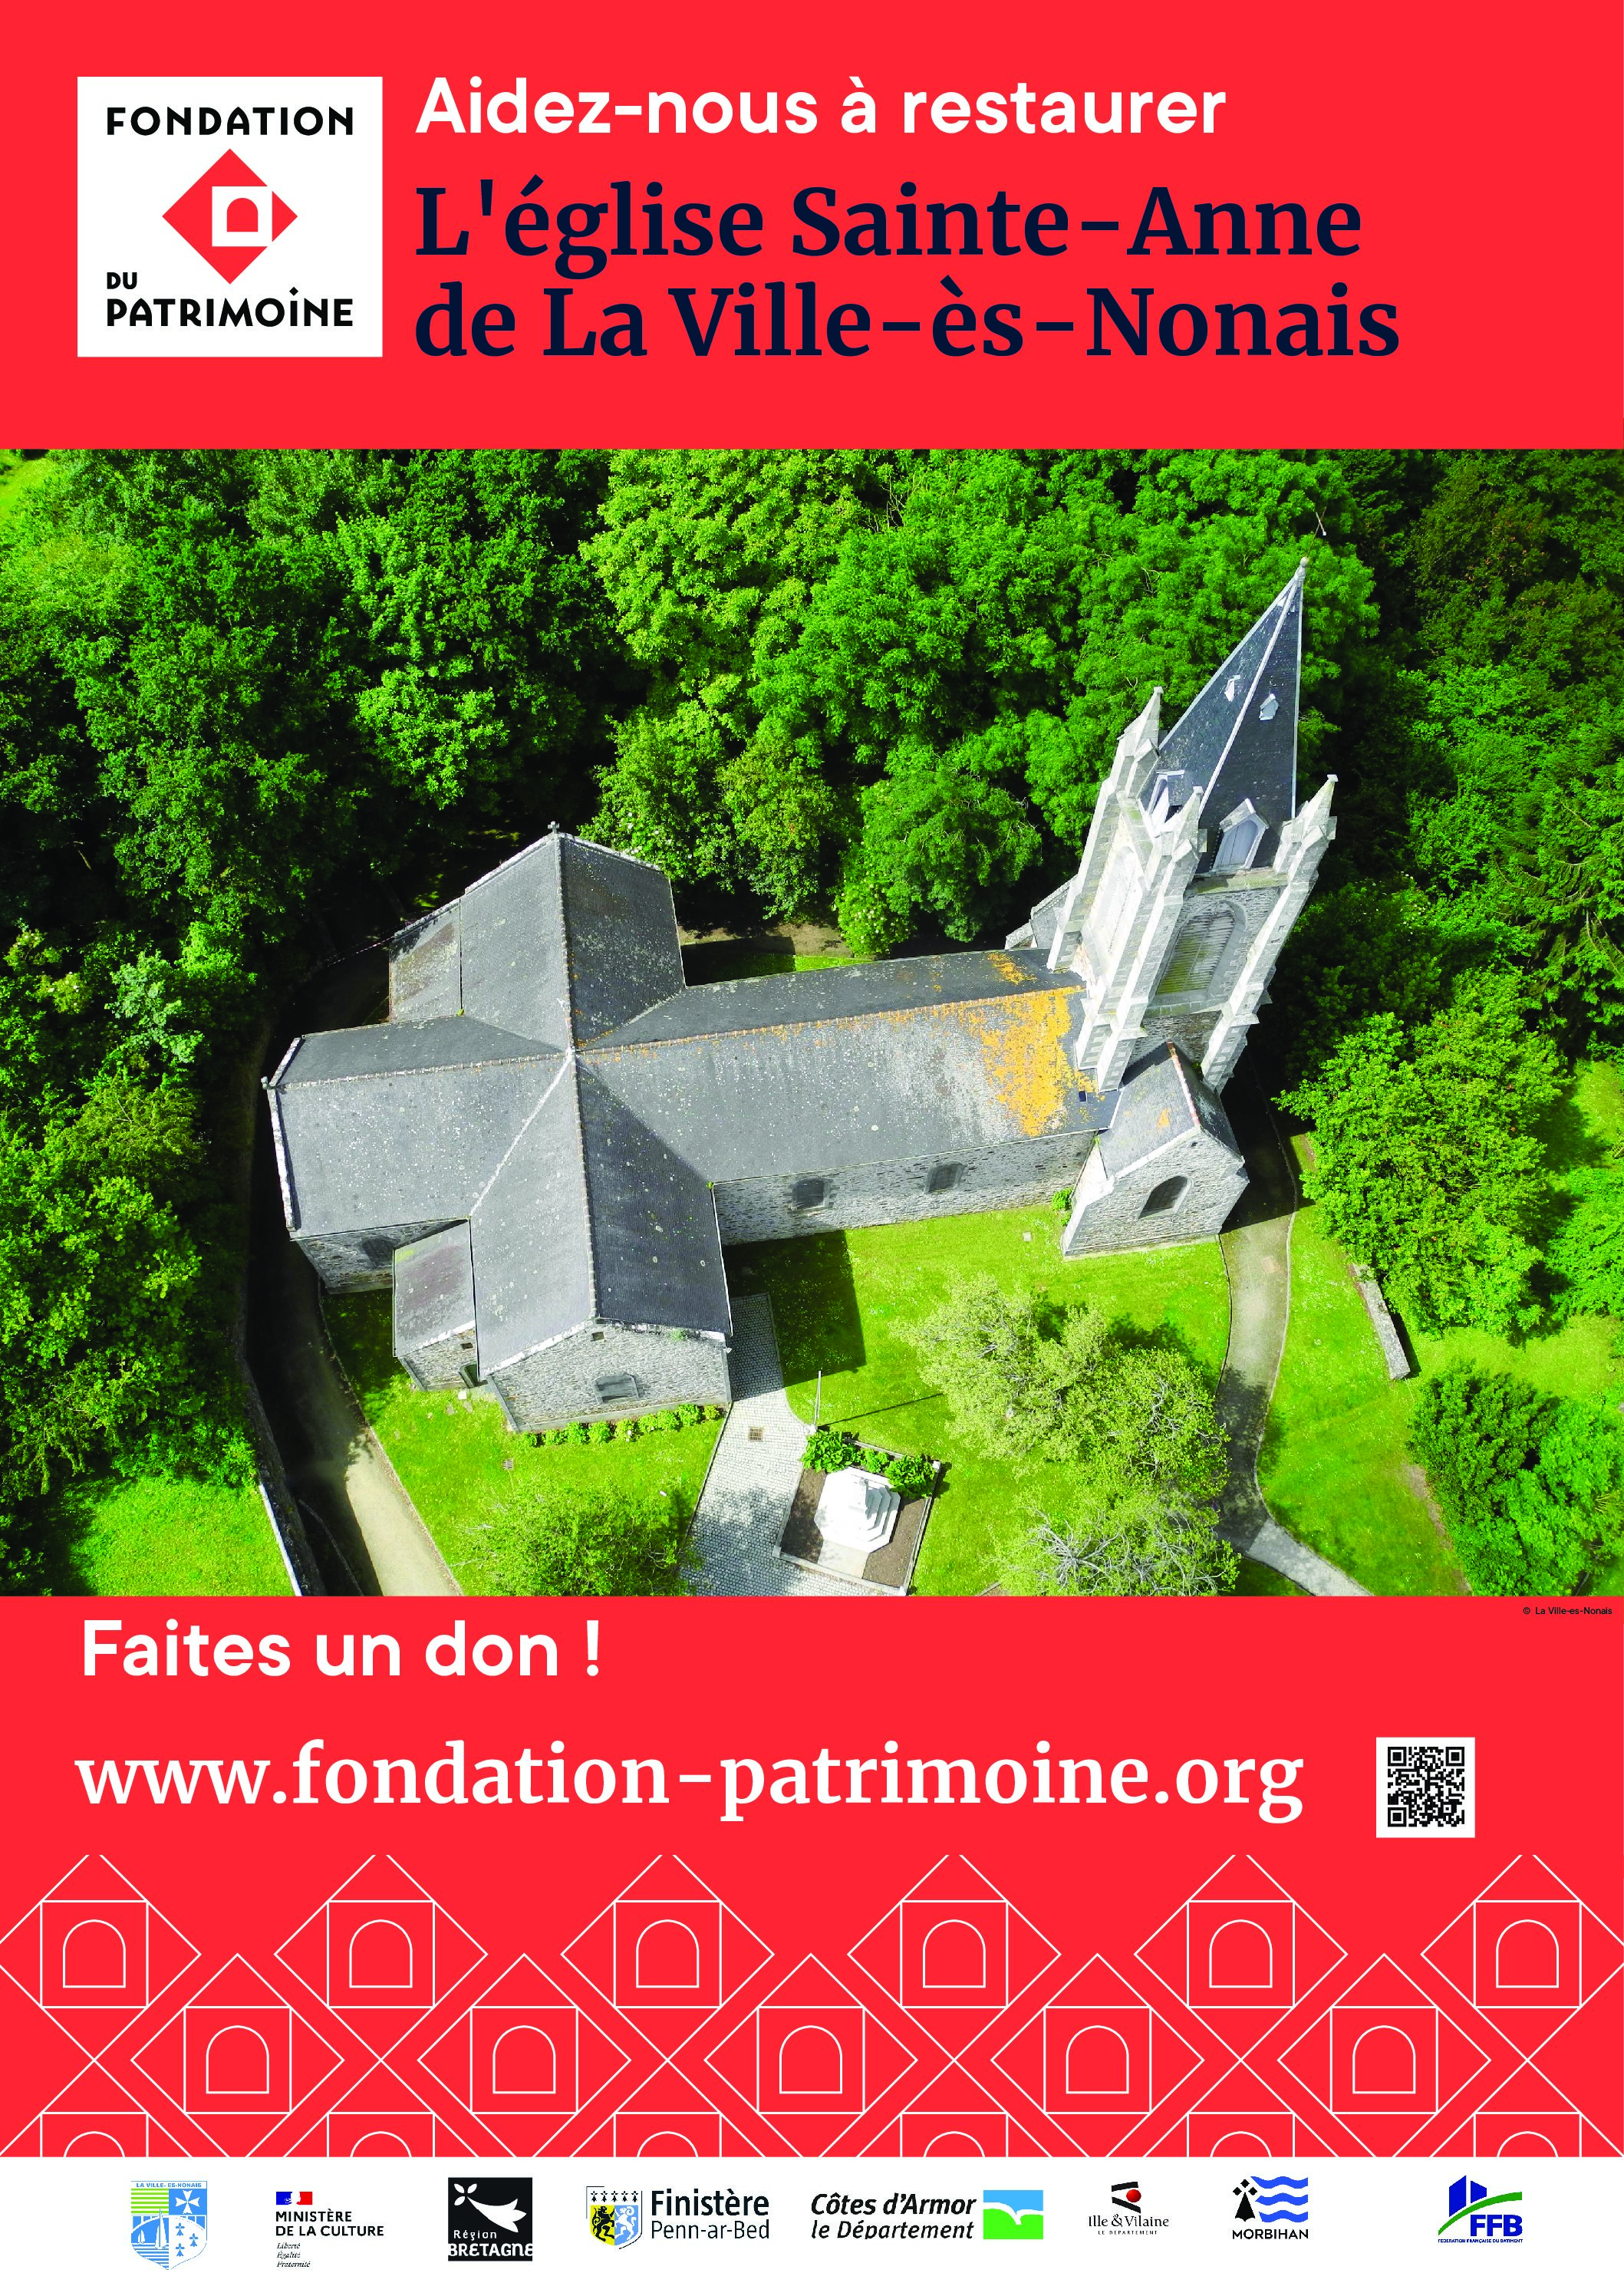 Collecte pour restaurer l’église Sainte-Anne